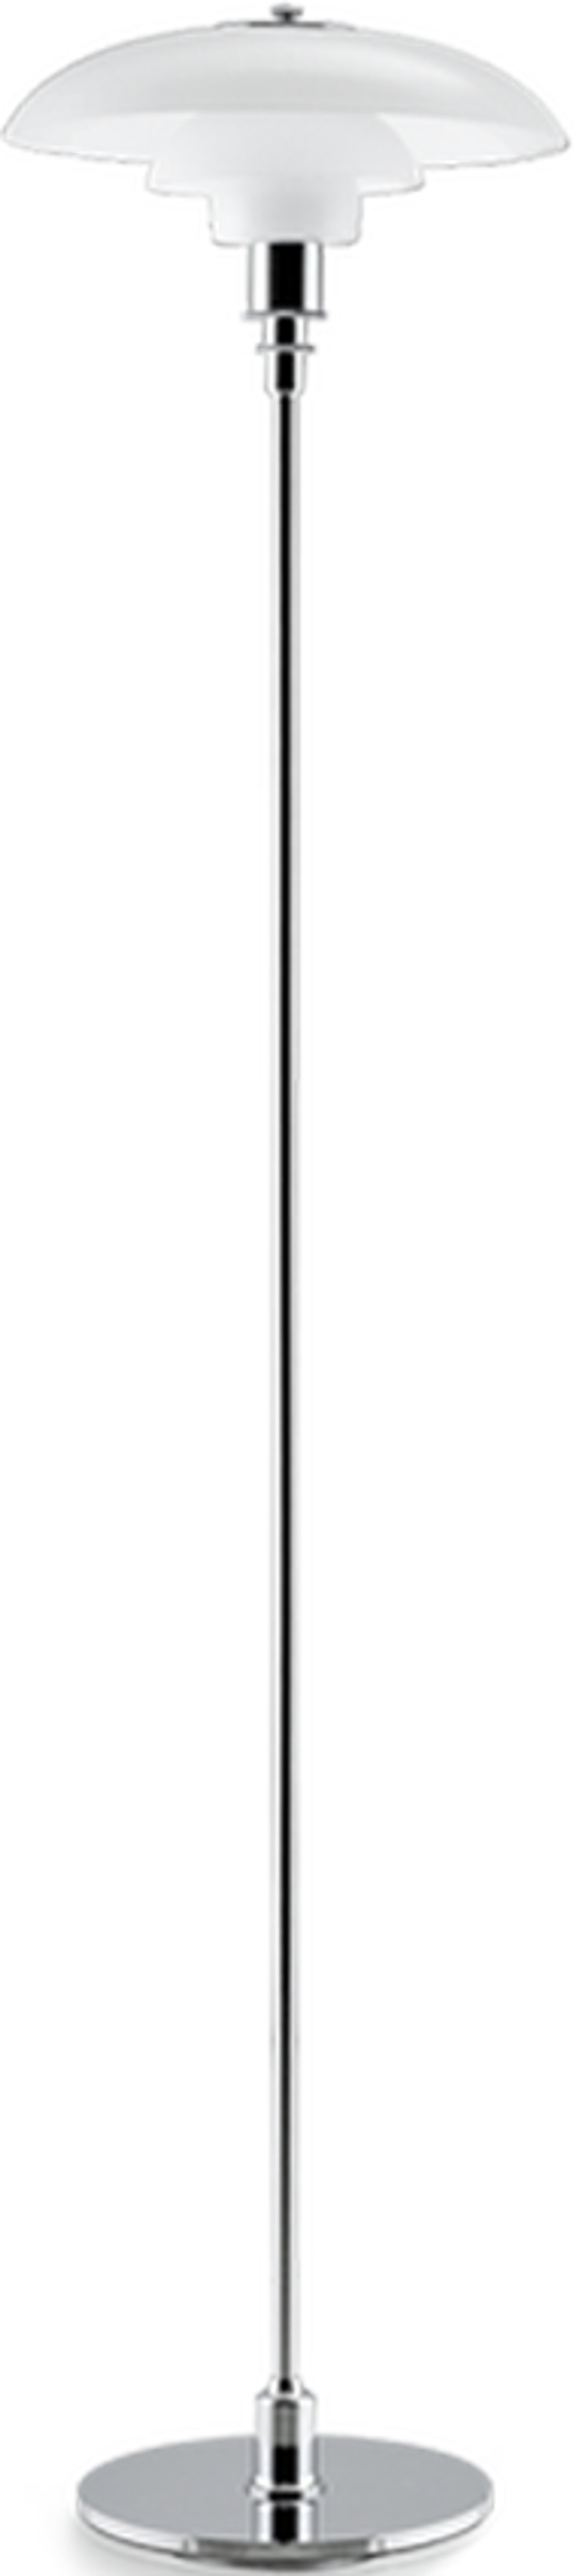 Lámpara de pie estilo PH 3.5/2.5 Chrome image.